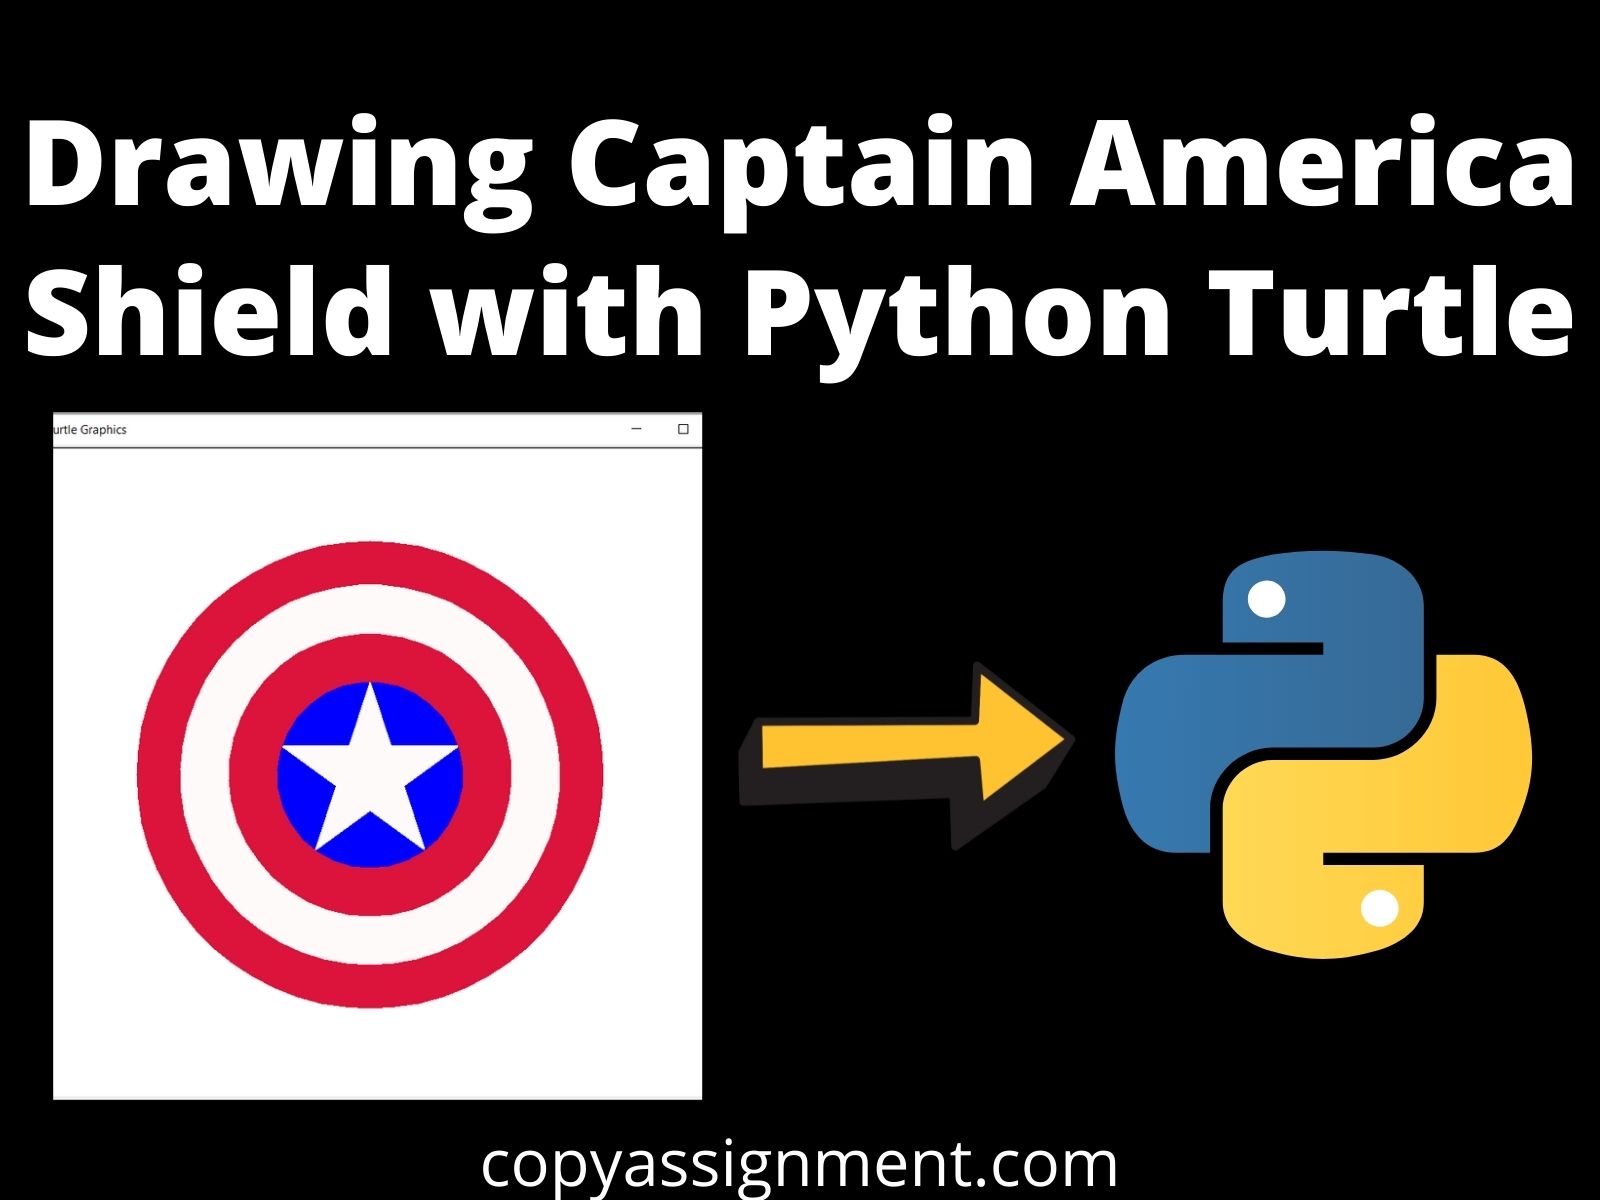 Captain America là người hùng được yêu thích nhất trong vũ trụ Marvel. Bạn muốn vẽ cái khiên của anh ta, nhưng lại không biết bắt đầu từ đâu? Đừng lo lắng, sử dụng Python Turtle để hướng dẫn bạn vẽ từng chi tiết một là một cách dễ dàng. Hãy xem hình ảnh để cảm nhận được sự đầy thú vị của việc vẽ hình.